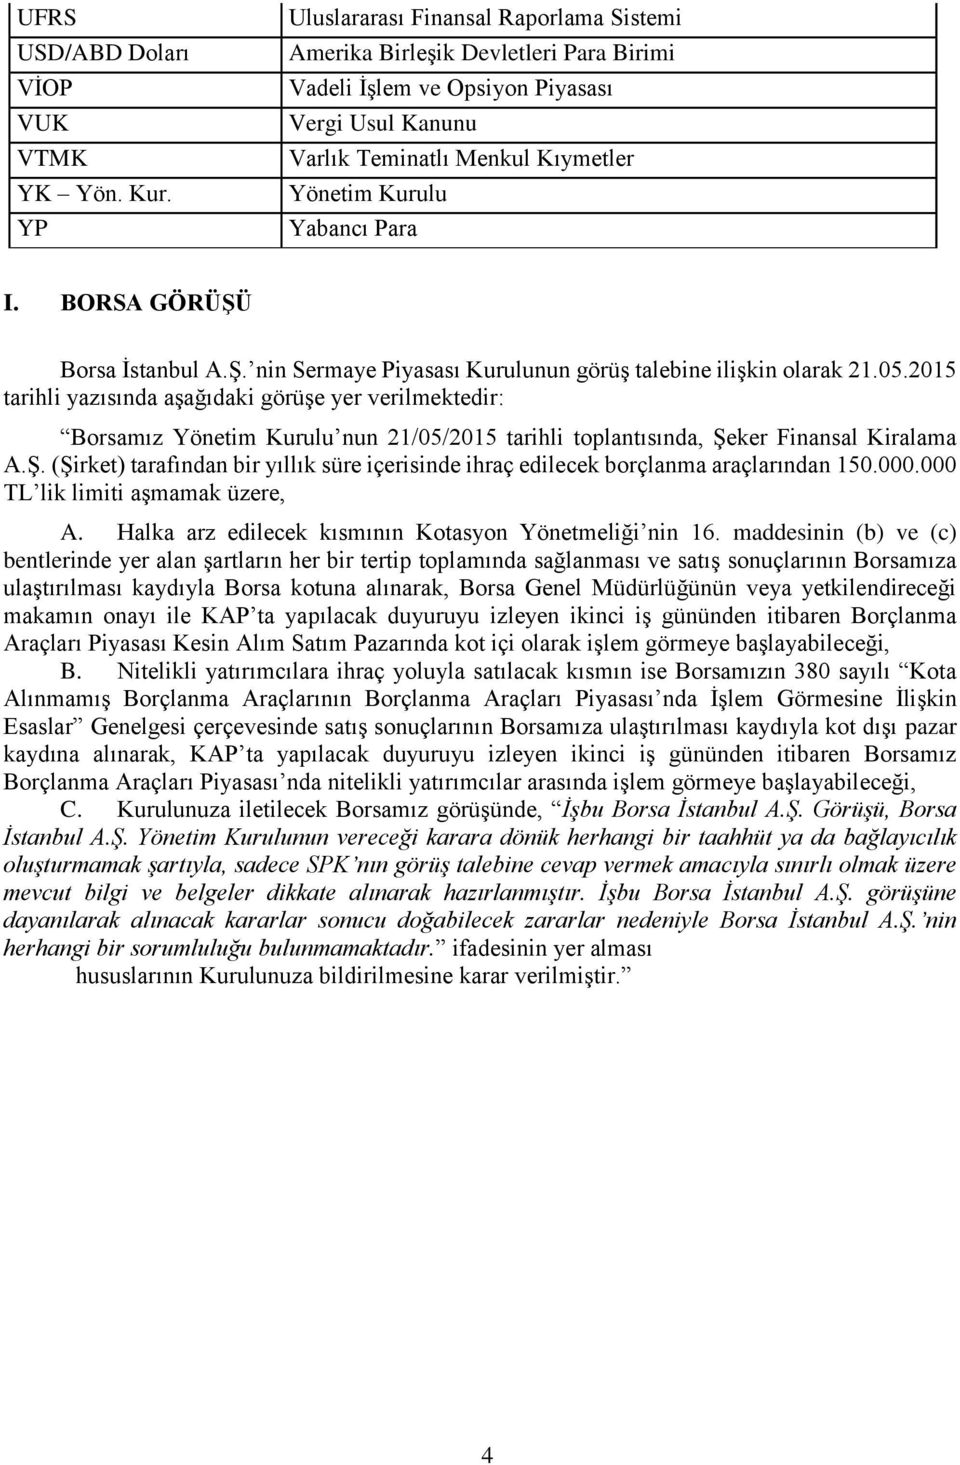 BORSA GÖRÜŞÜ Borsa İstanbul A.Ş. nin Sermaye Piyasası Kurulunun görüş talebine ilişkin olarak 21.05.